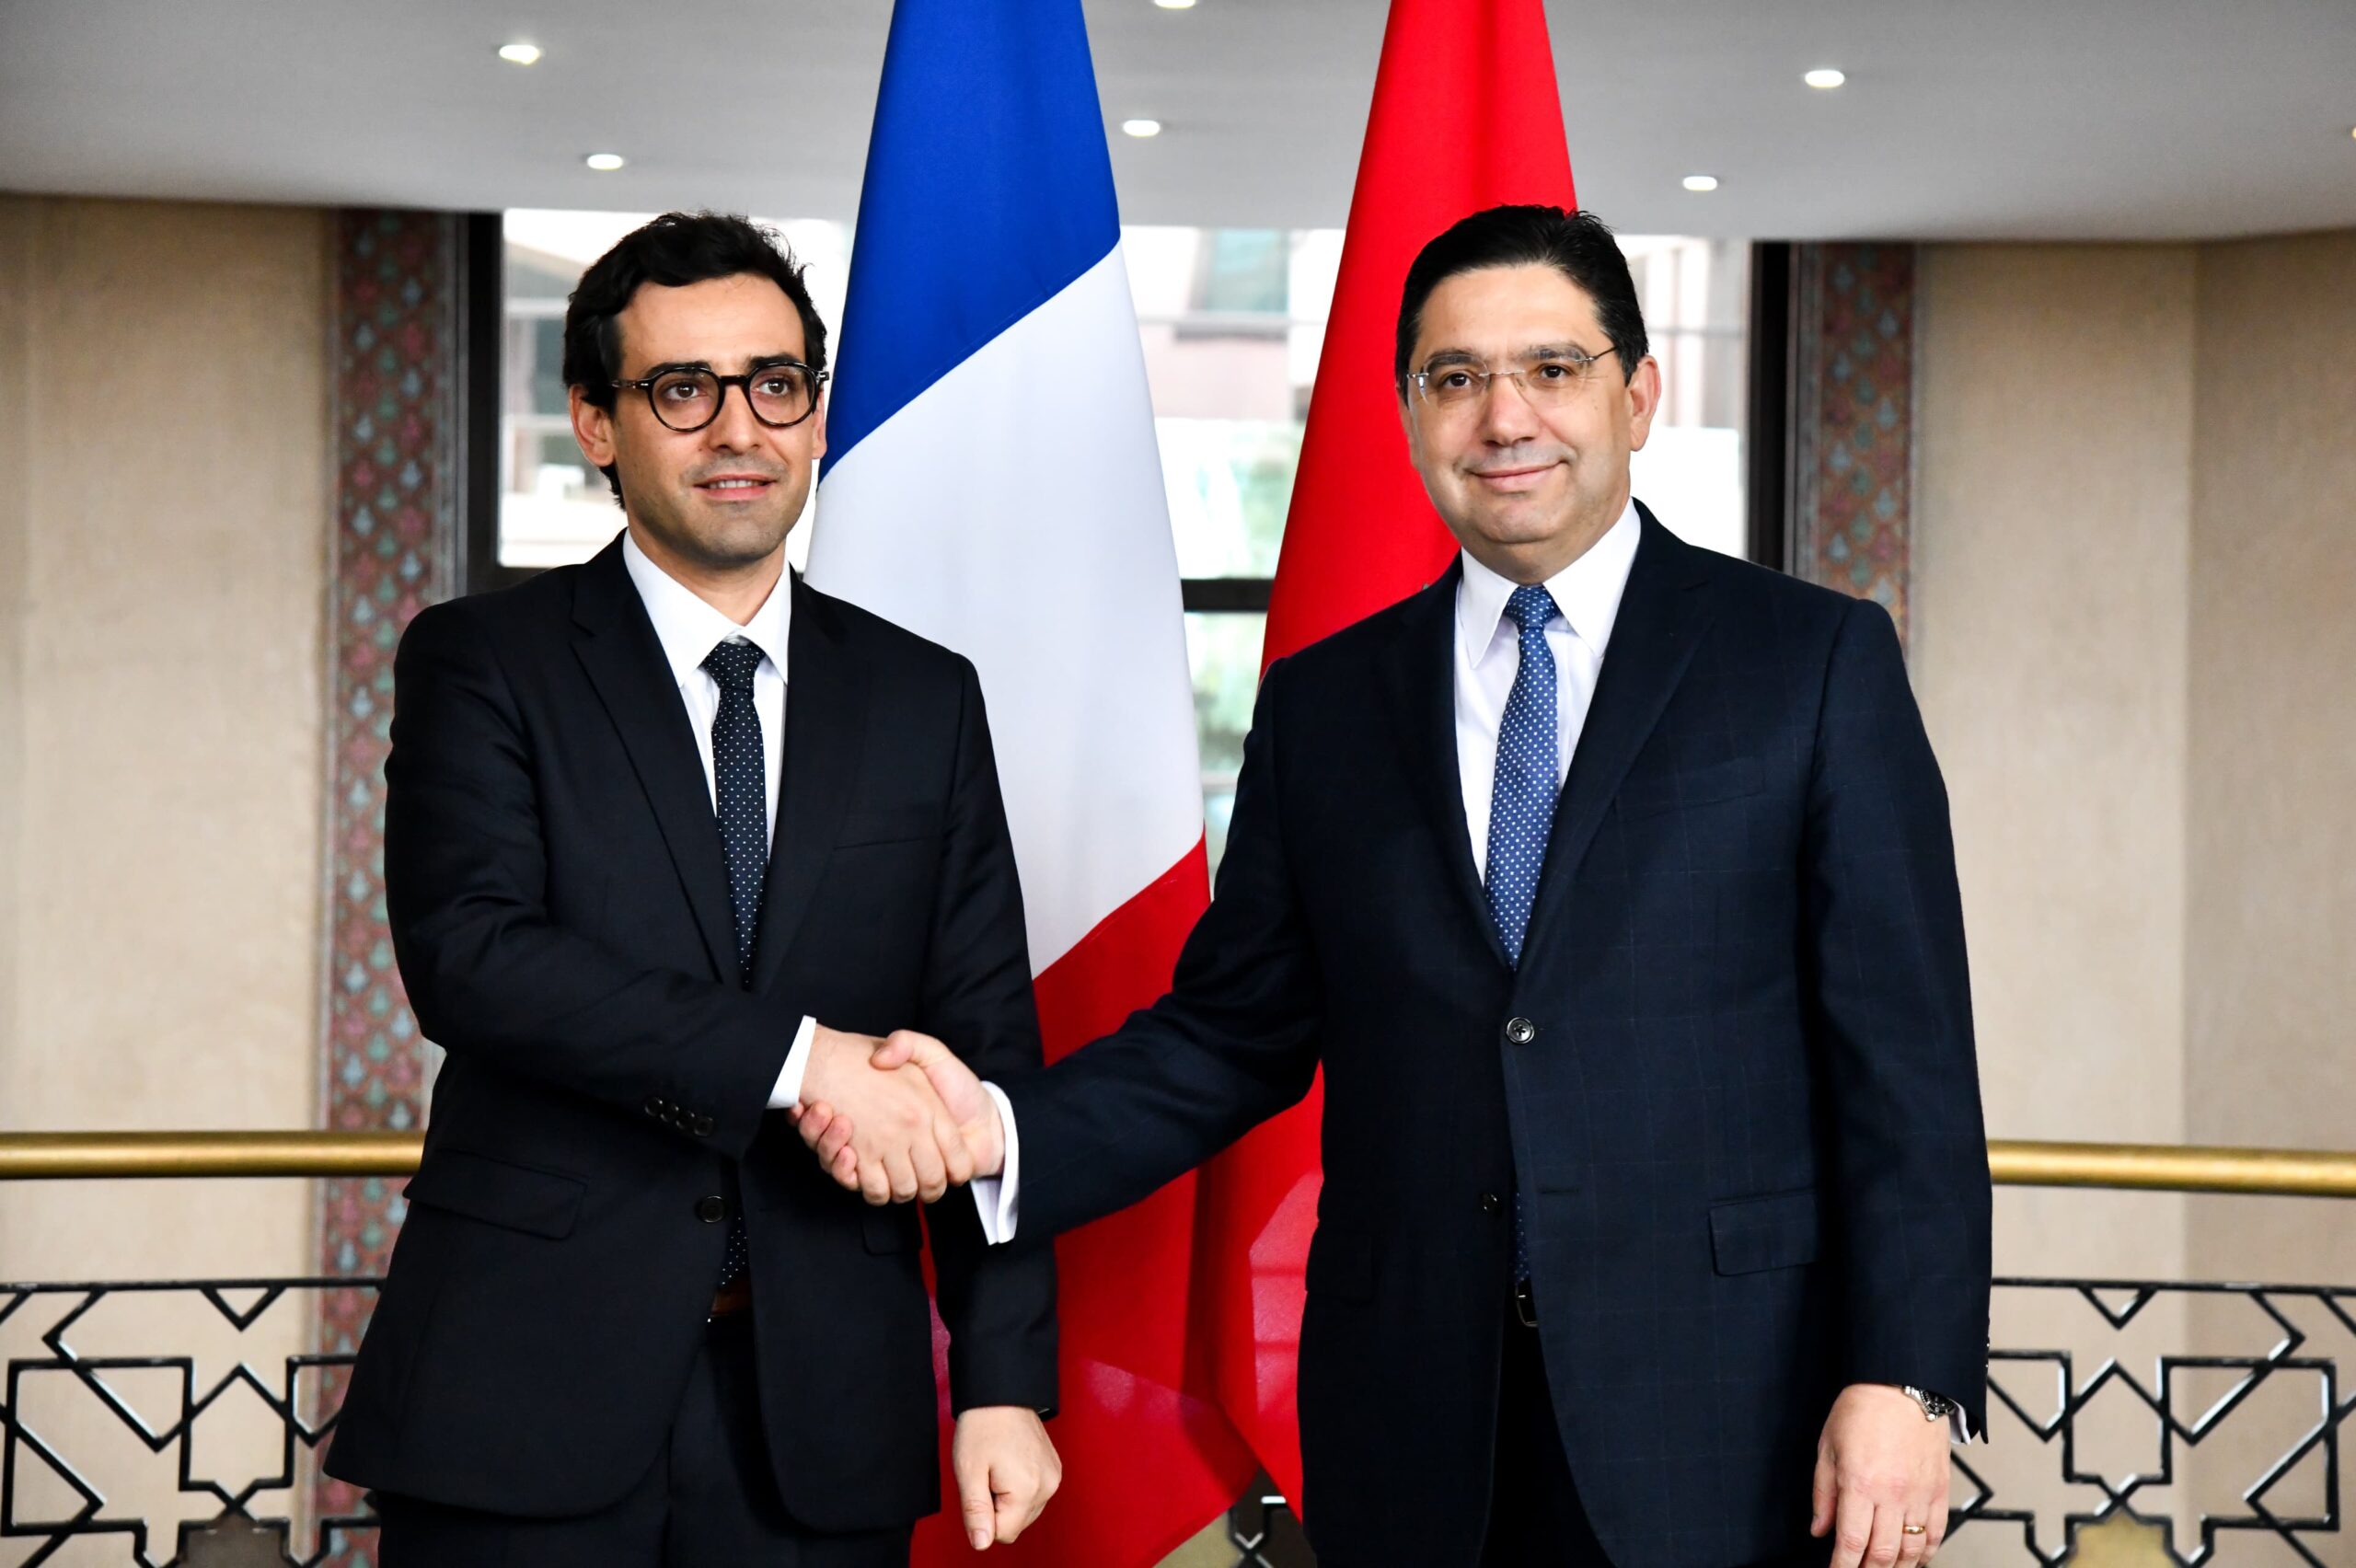 La France apporte un soutien « clair et constant » au plan marocain d’autonomie, (Stéphane Séjourné)